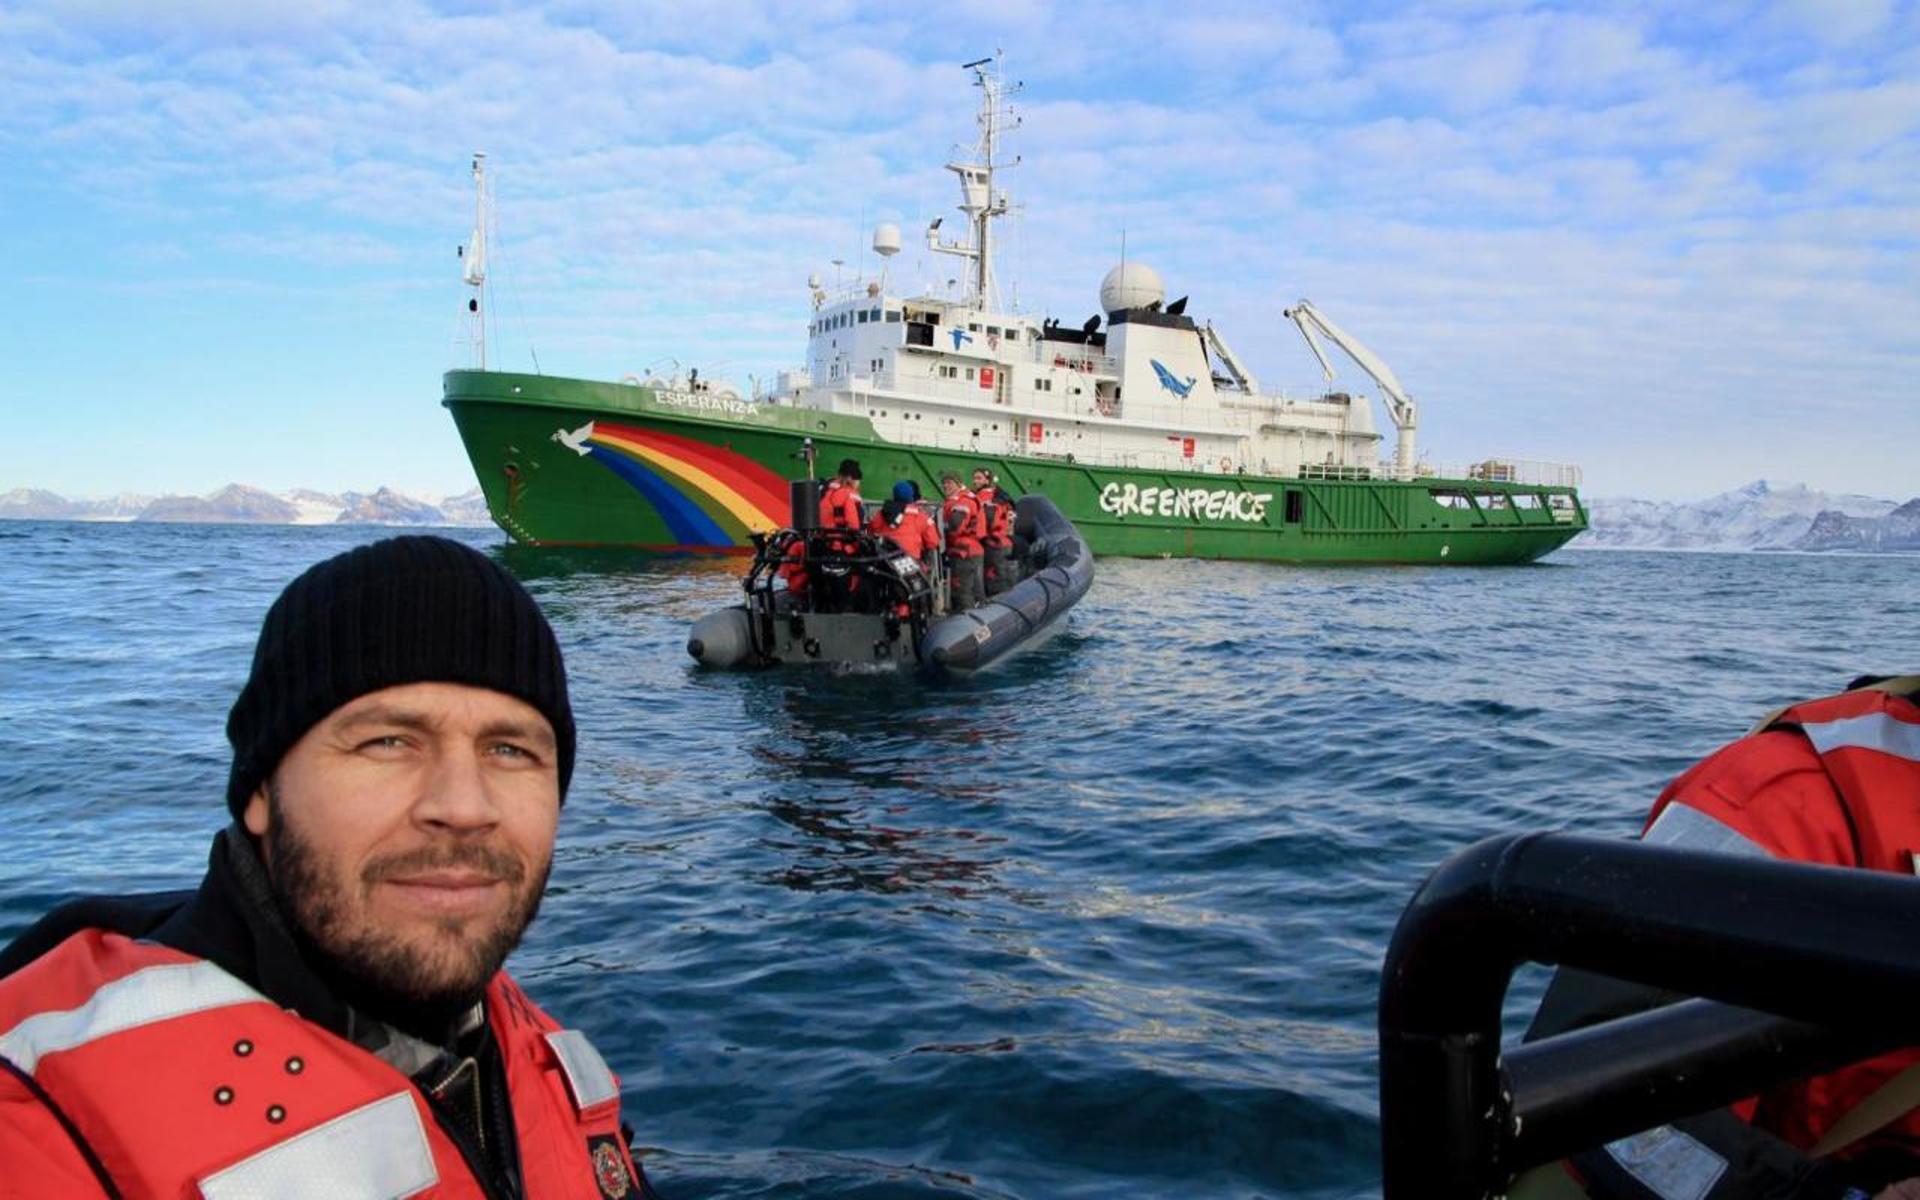 Daniel Bengtsson som arbetar som kommunikationschef på Greenpeace Norden deltar här i en expedition till bland annat Svalbard med Greenpeace båt Esperanza.